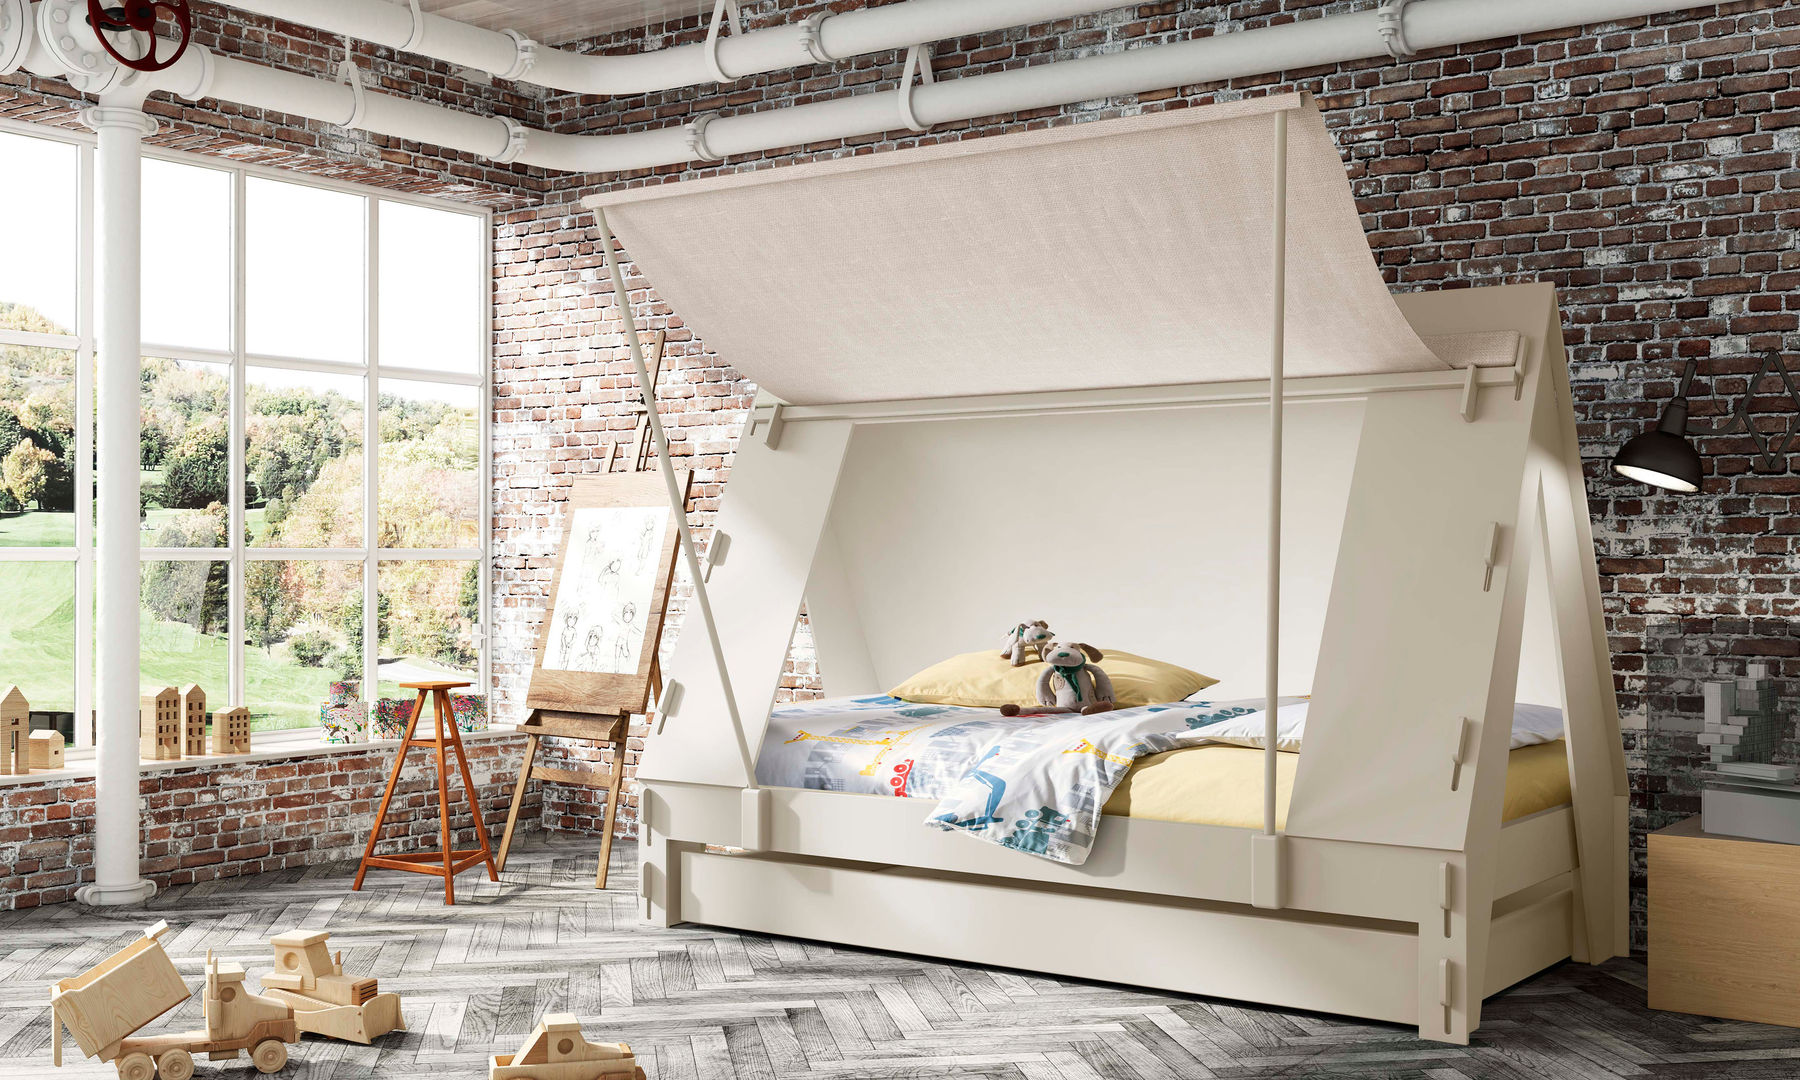 KIDS TENT BEDROOM CABIN BED in White Cuckooland Dormitorios modernos: Ideas, imágenes y decoración